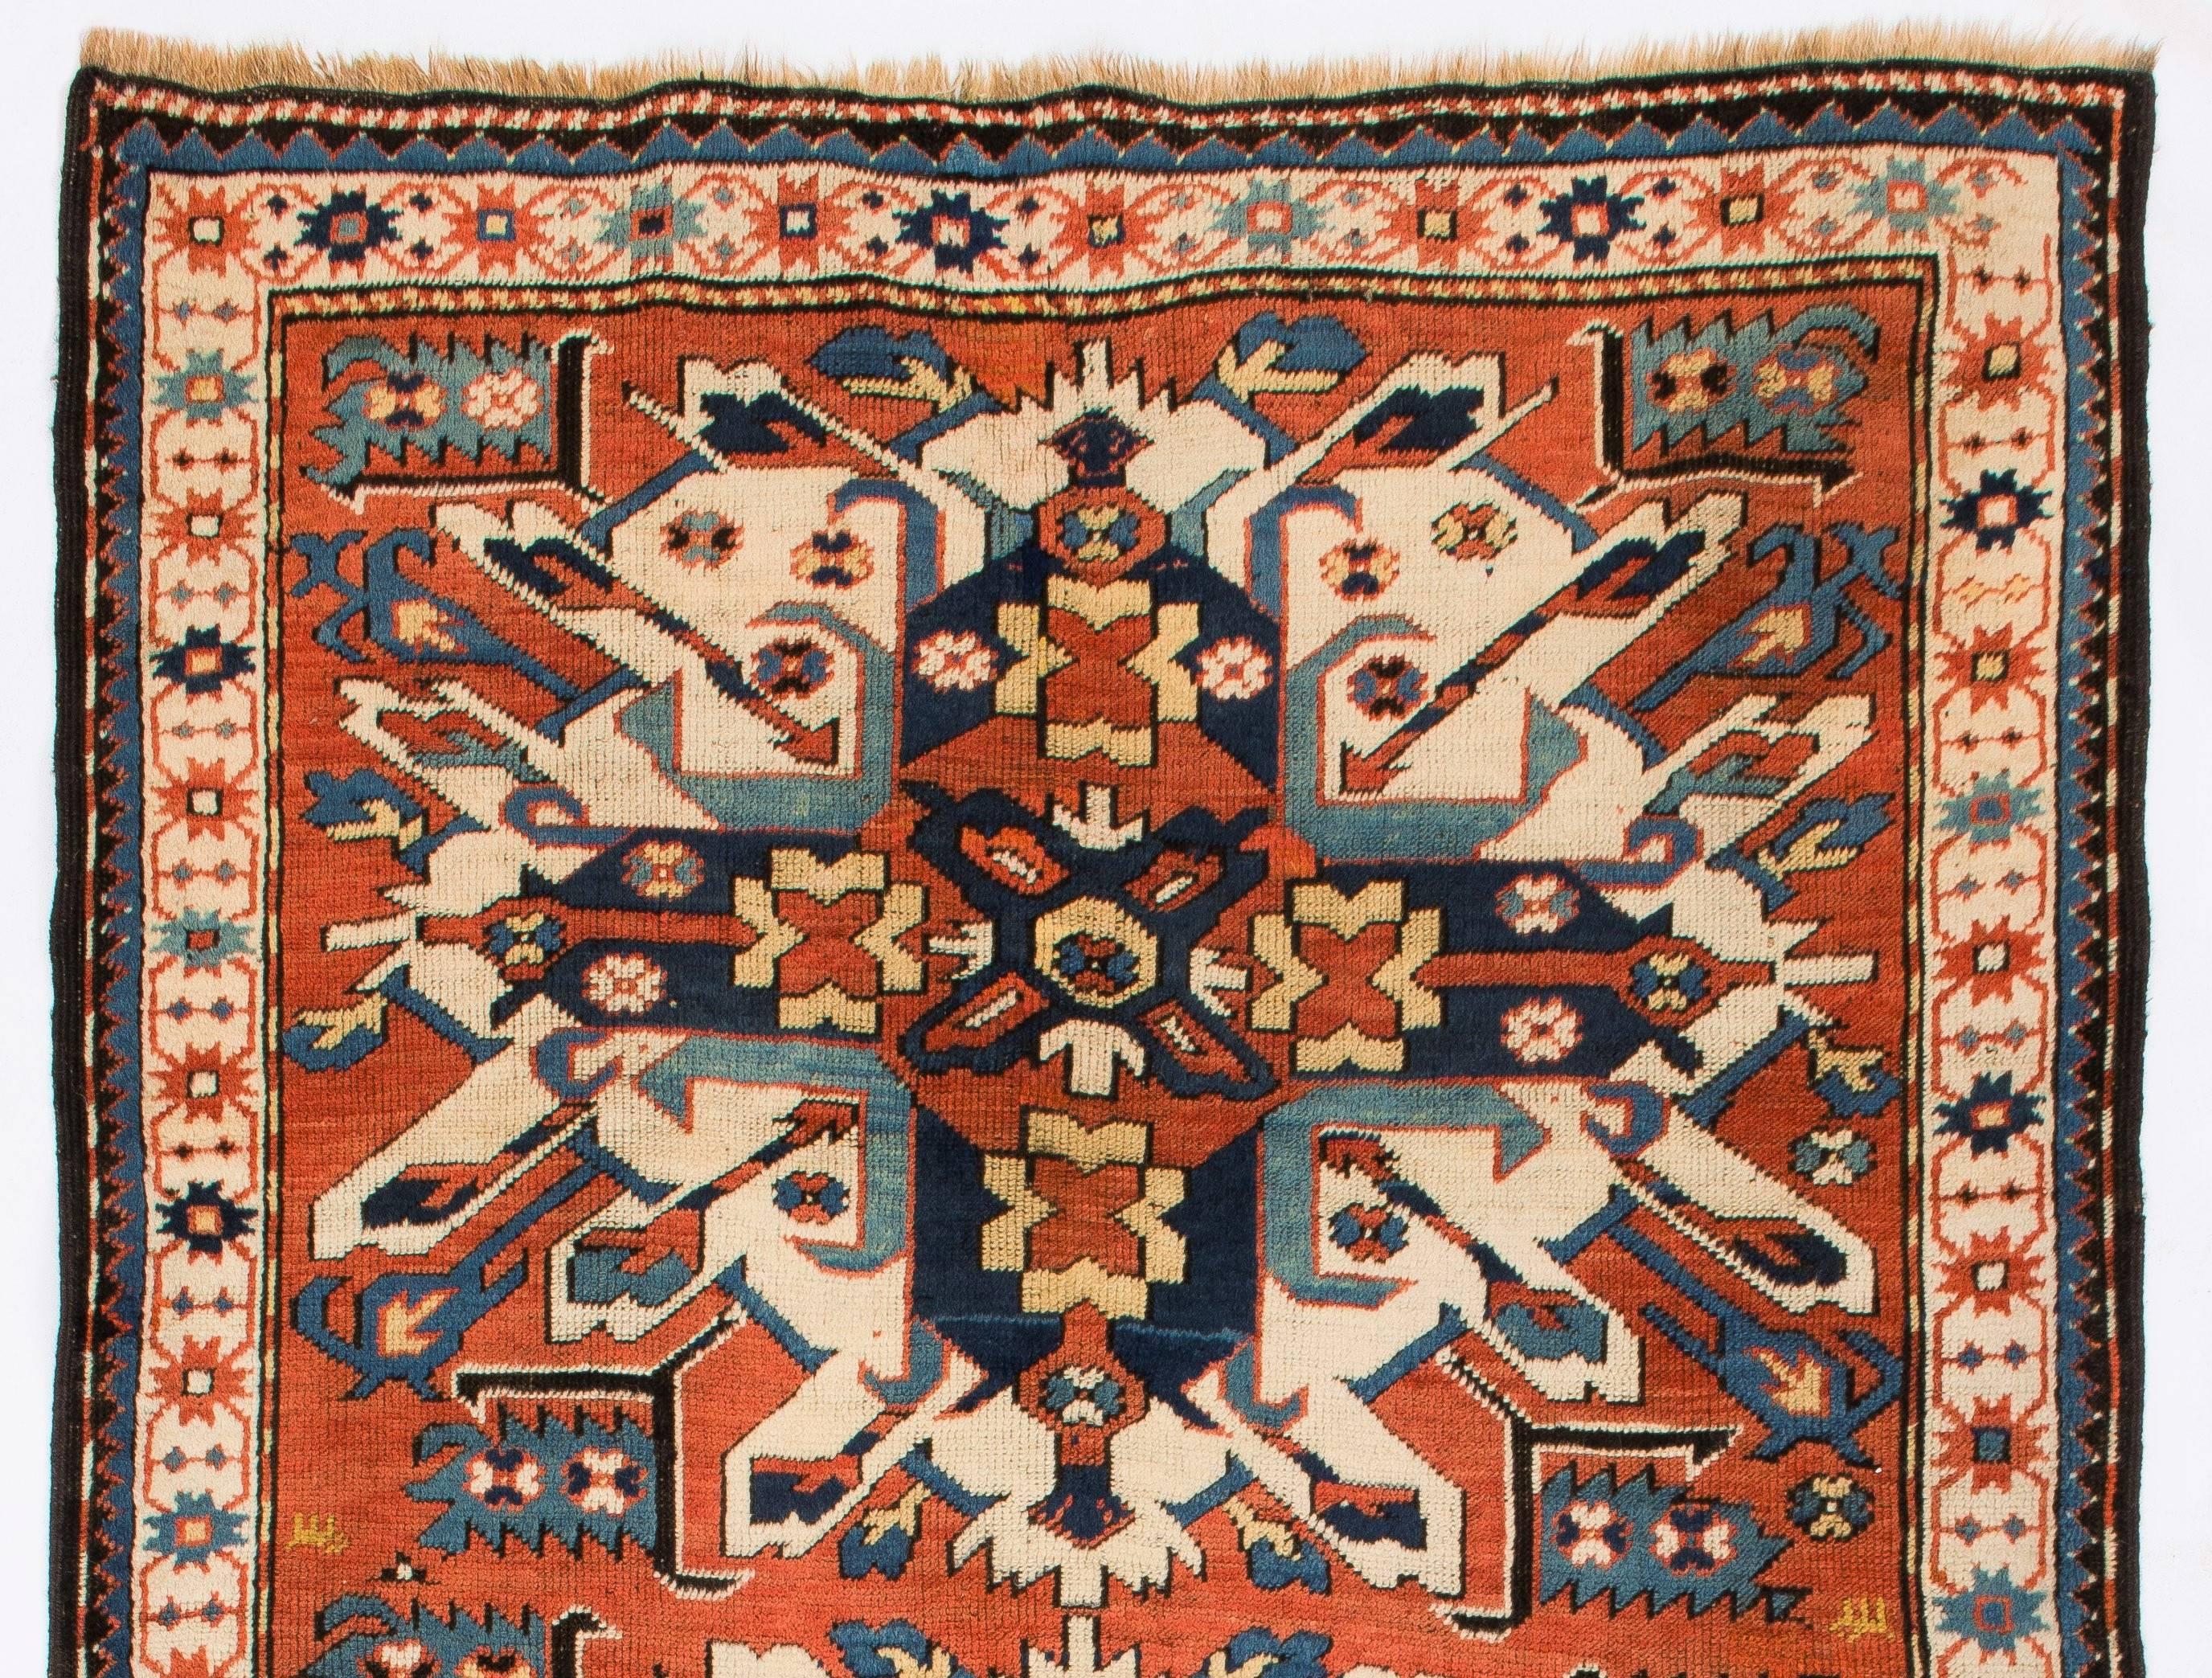 Ein antiker kaukasischer Teppich aus dem Dorf Chelaberd in Süd-Karabagh. Diese sehr beliebten so genannten Sunburst- oder Eagle-Kazak-Design-Teppiche gehören zu den begehrtesten Sammlerstücken unter allen antiken kaukasischen Textilkunstwerken.